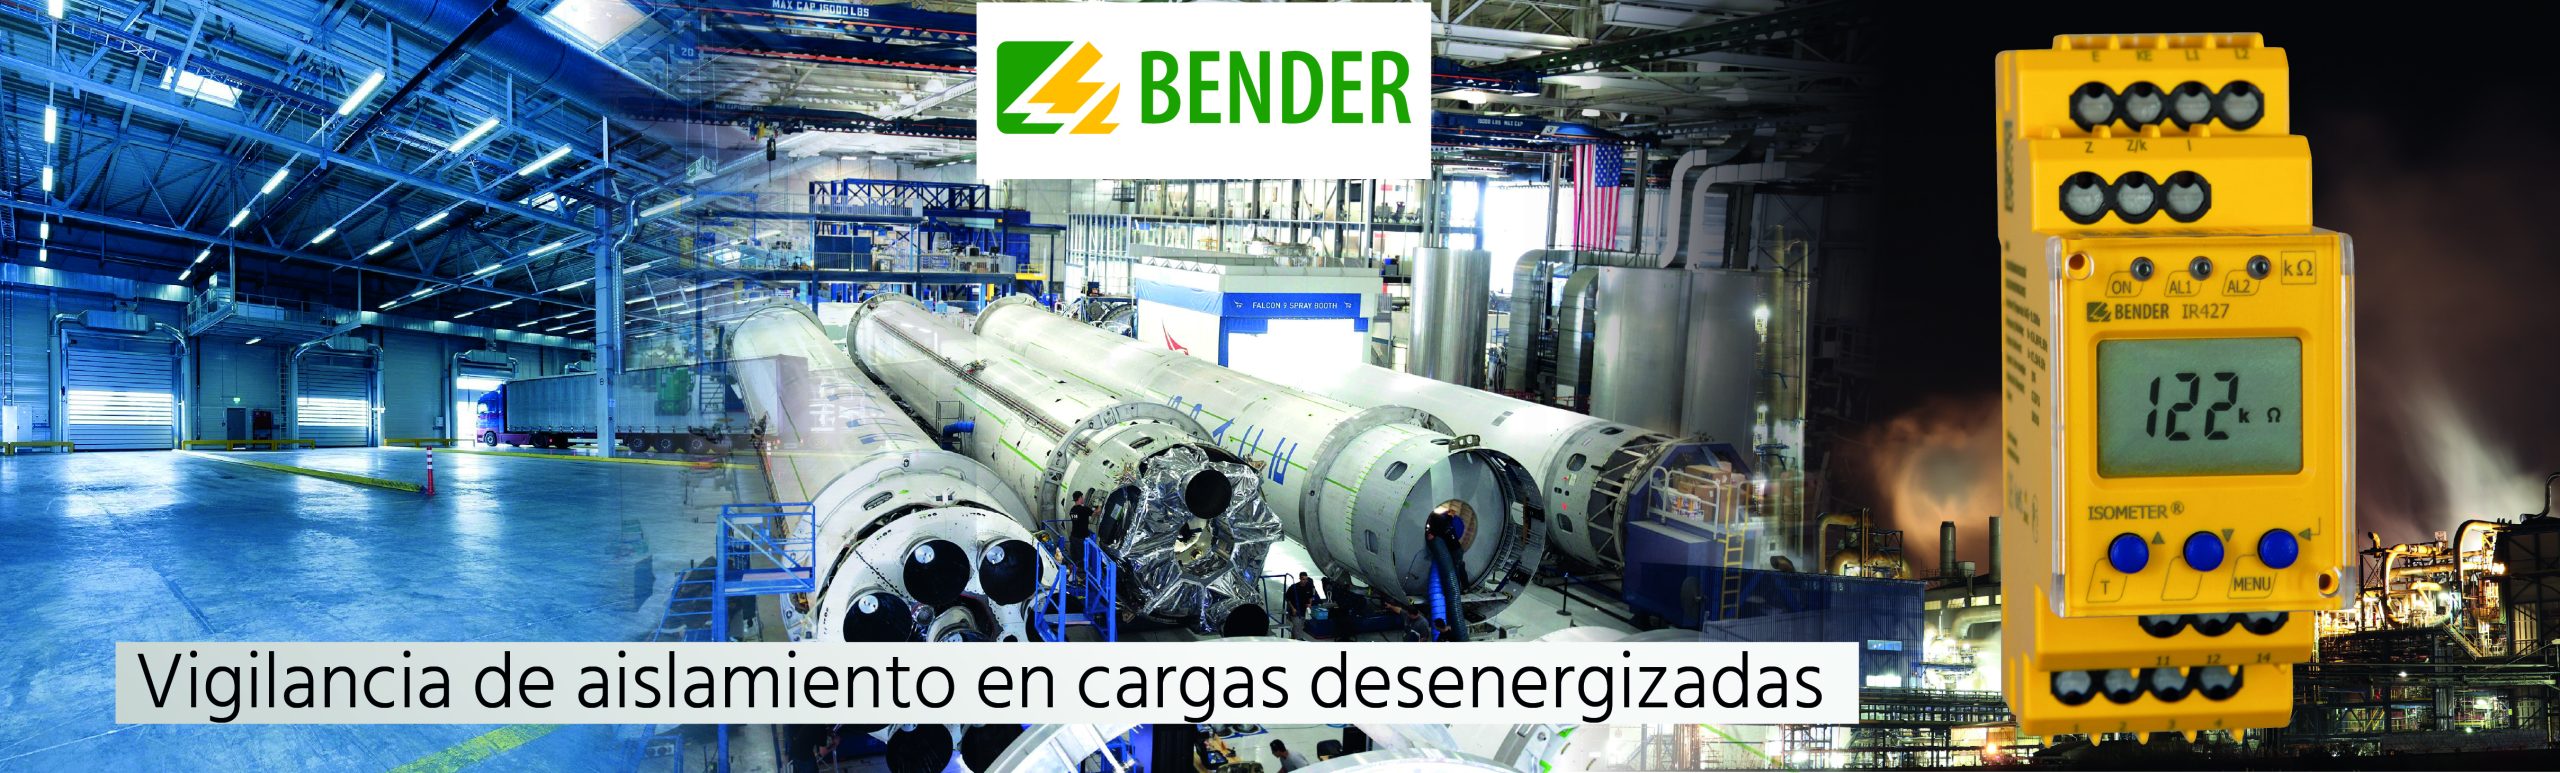 BENDER - Vigilancia de aislamiento de carga